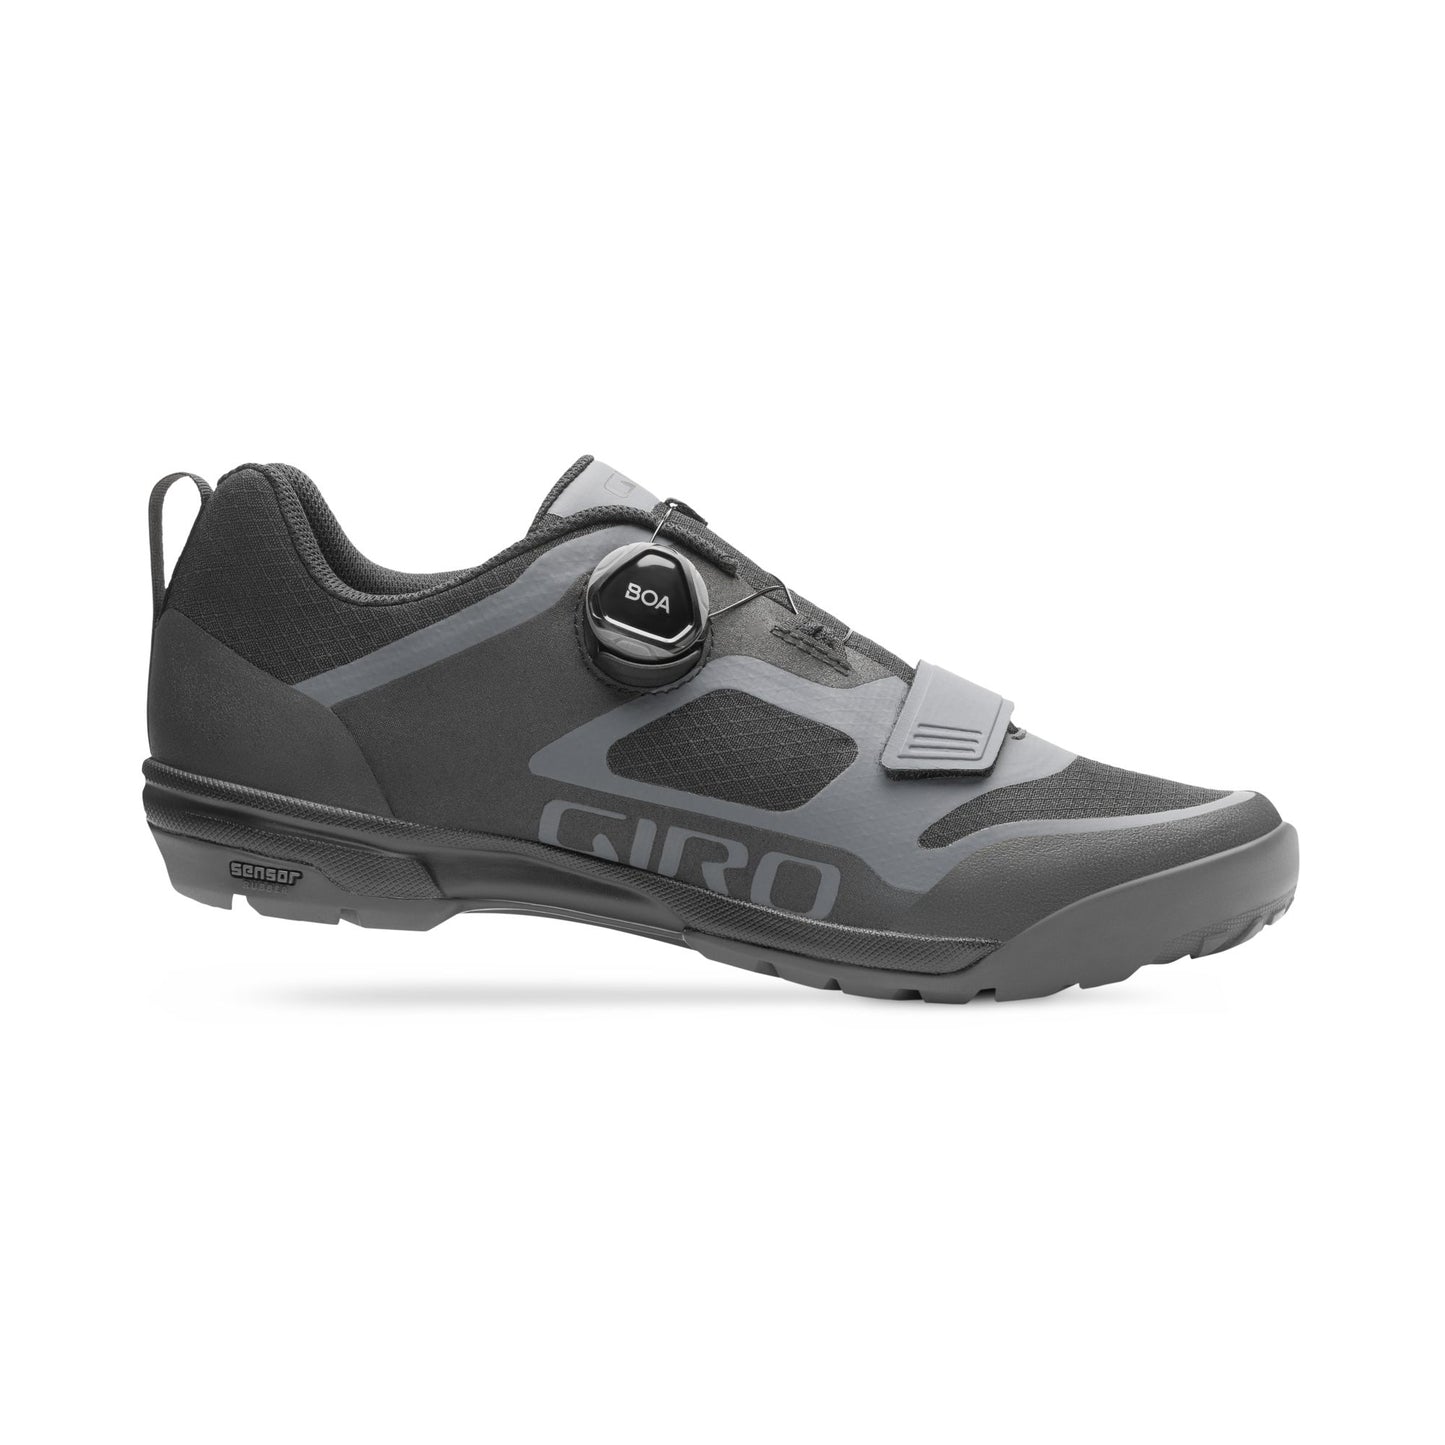 Giro Men's Ventana Shoe Portaro Grey/Dark Shadow Bike Shoes